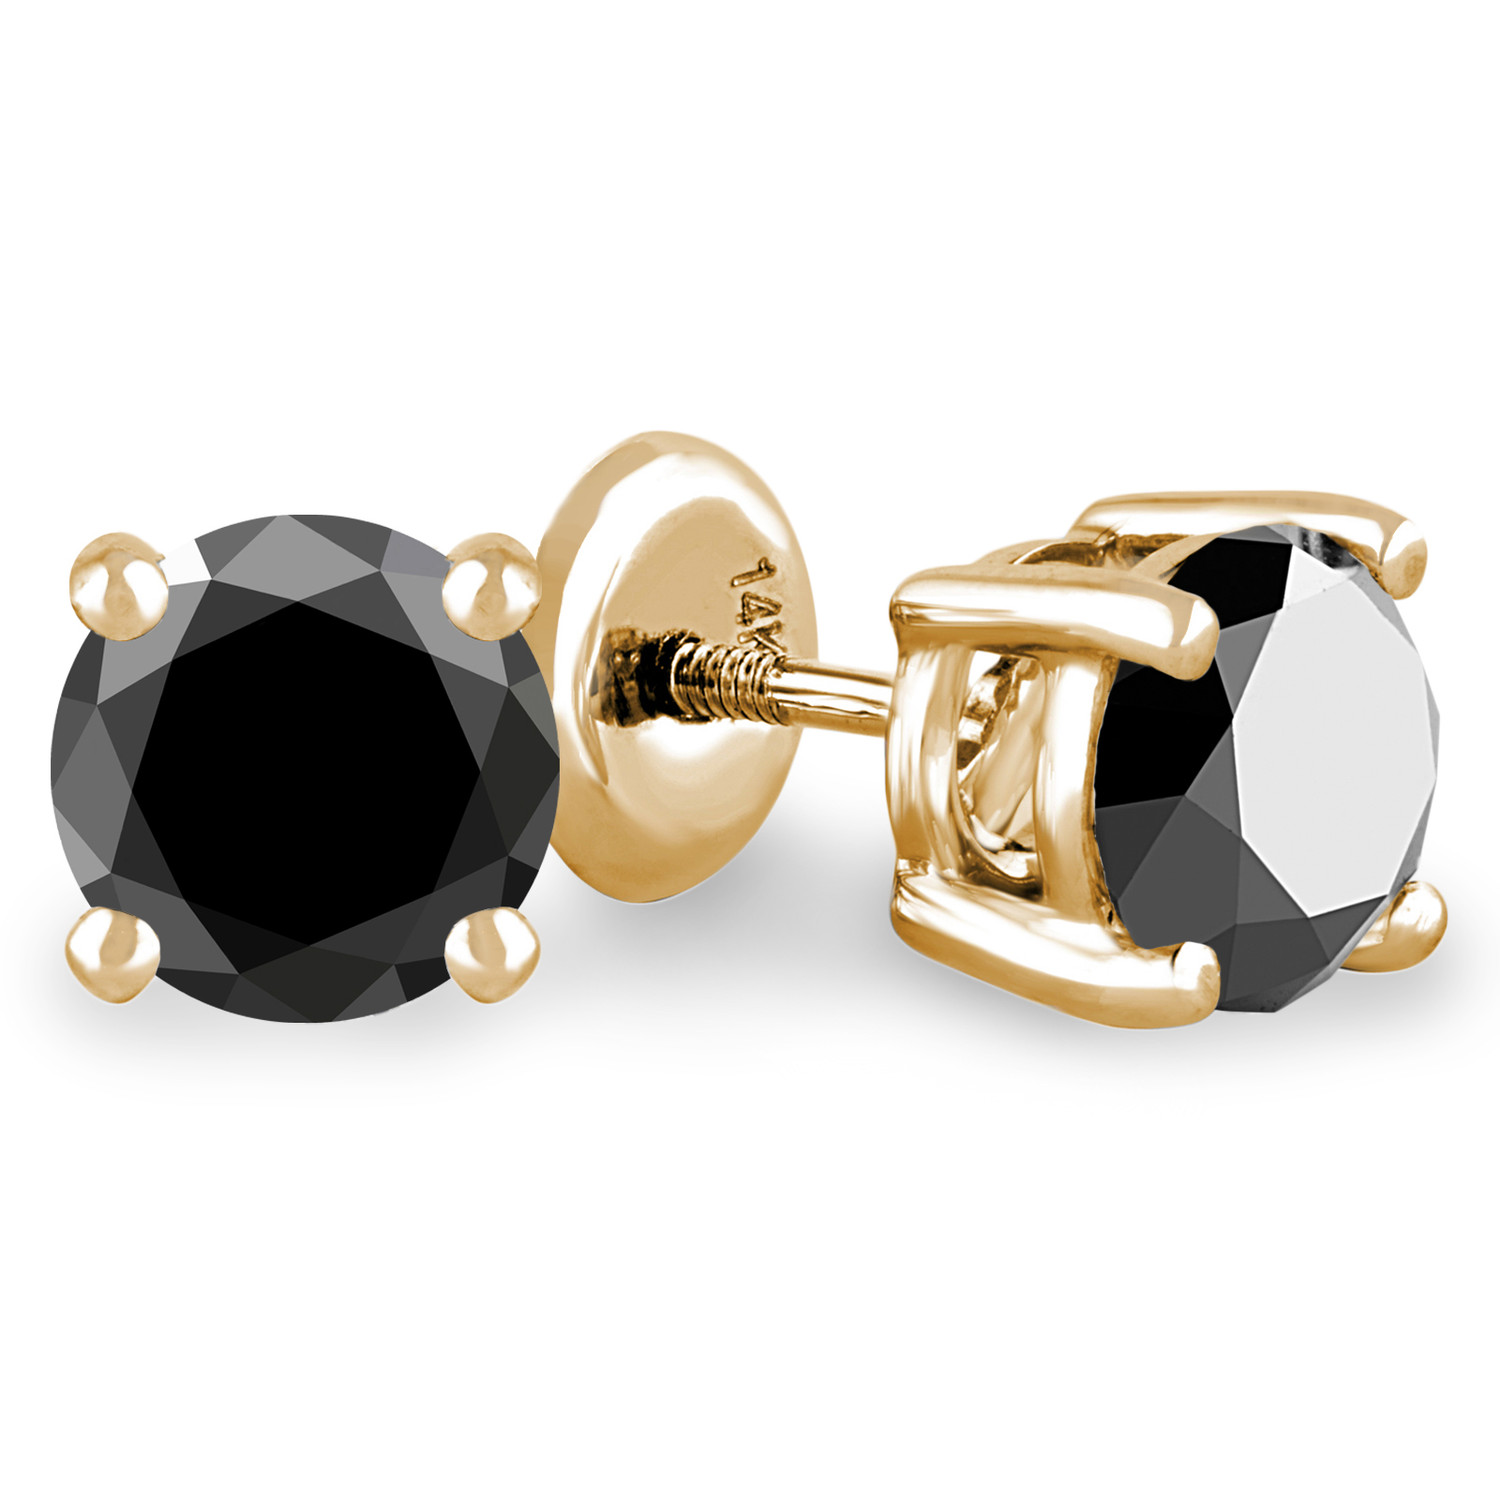 Kriaa Marcasite Stone Black Pearl Stud Earrings  1308215  JewelMazecom